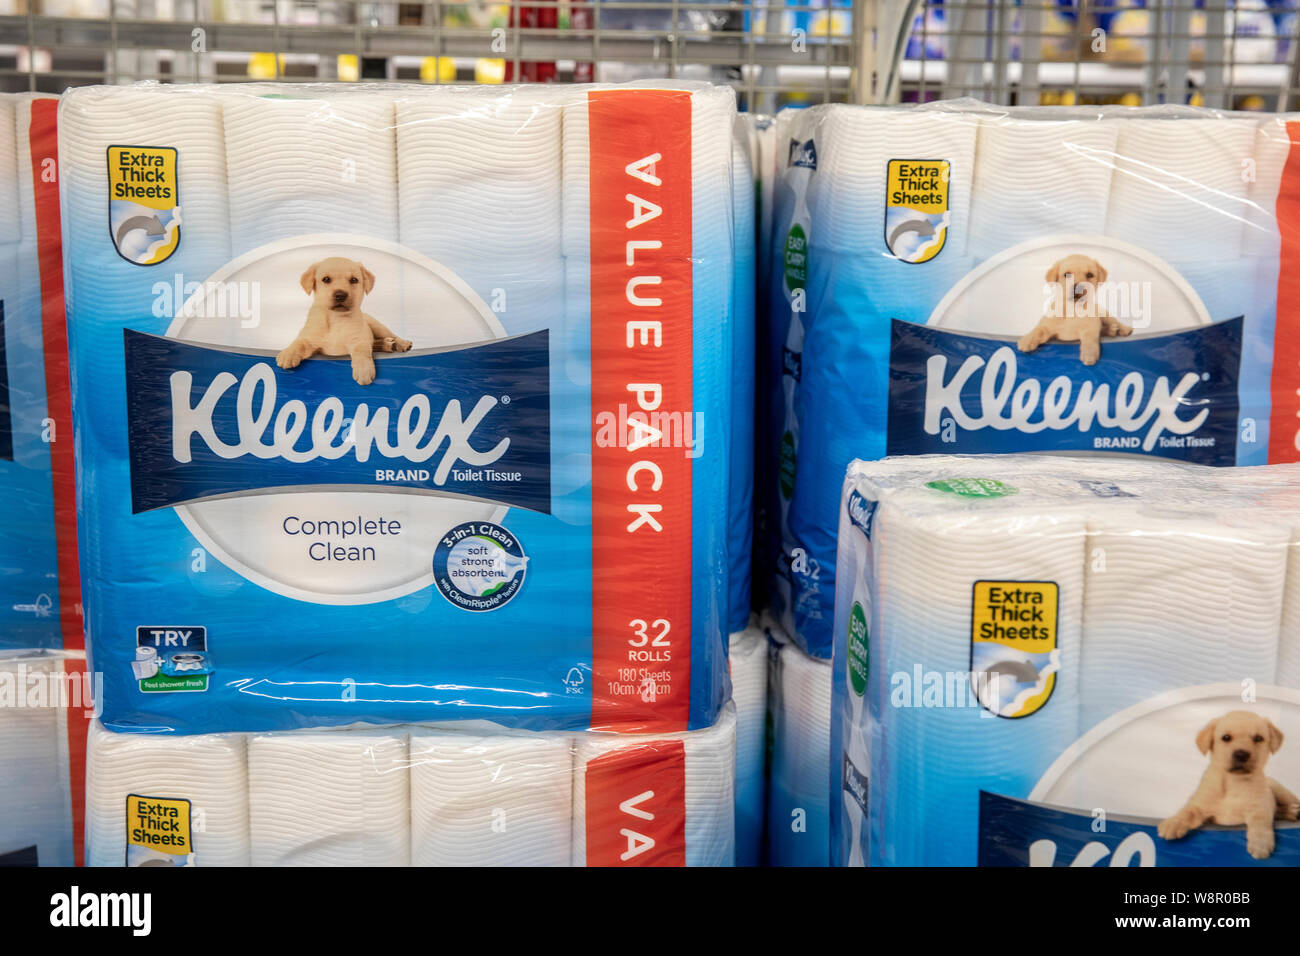 Kleenex Banque d'image et photos - Alamy